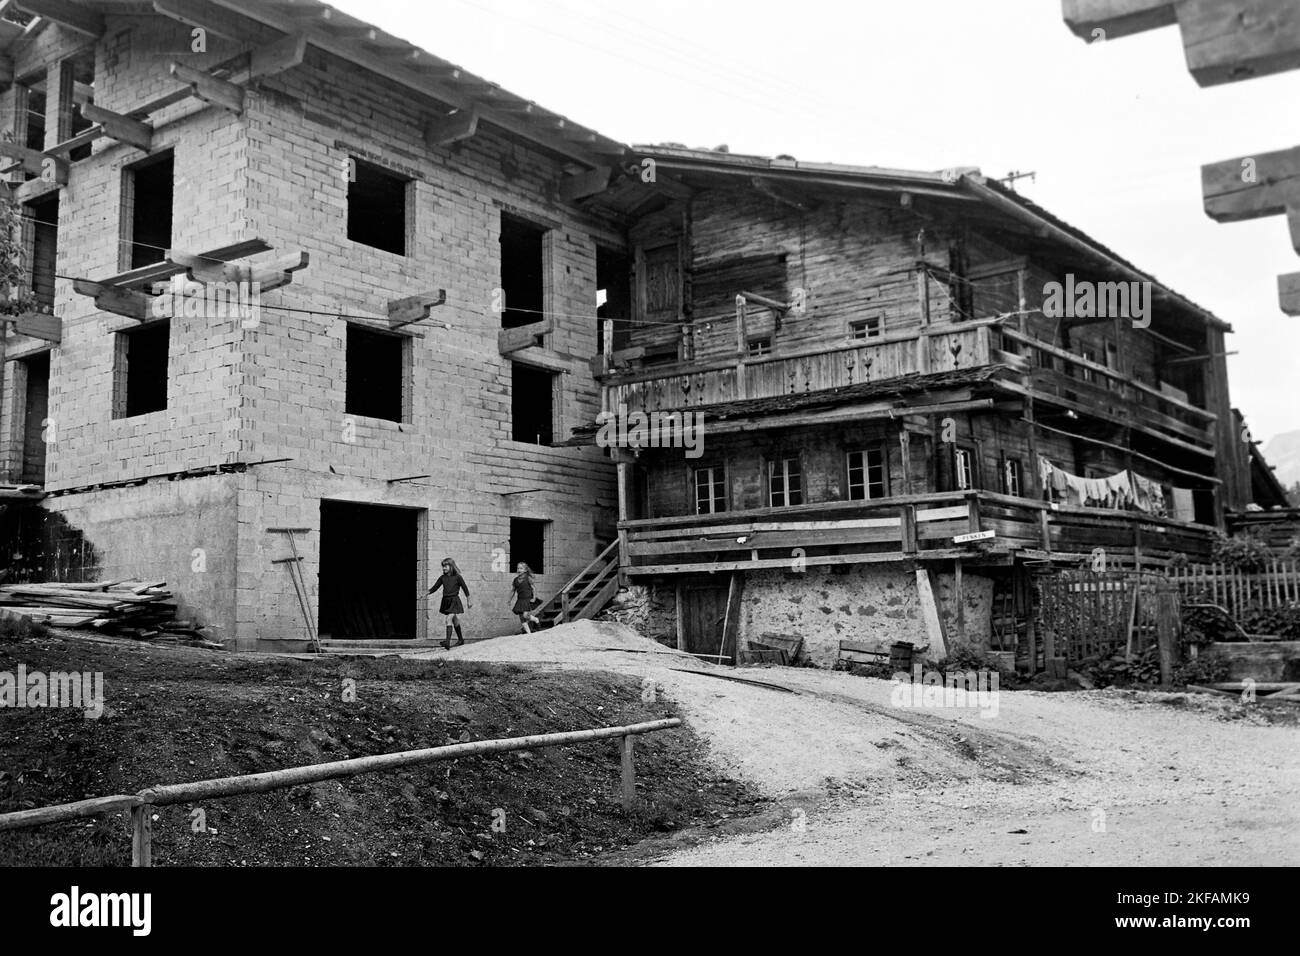 Bauernhof im Ausbau im Zillertal, Tirol, 1970. Ferme avec expansion inachevée dans la vallée de Ziller, Tyrol, 1970. Banque D'Images